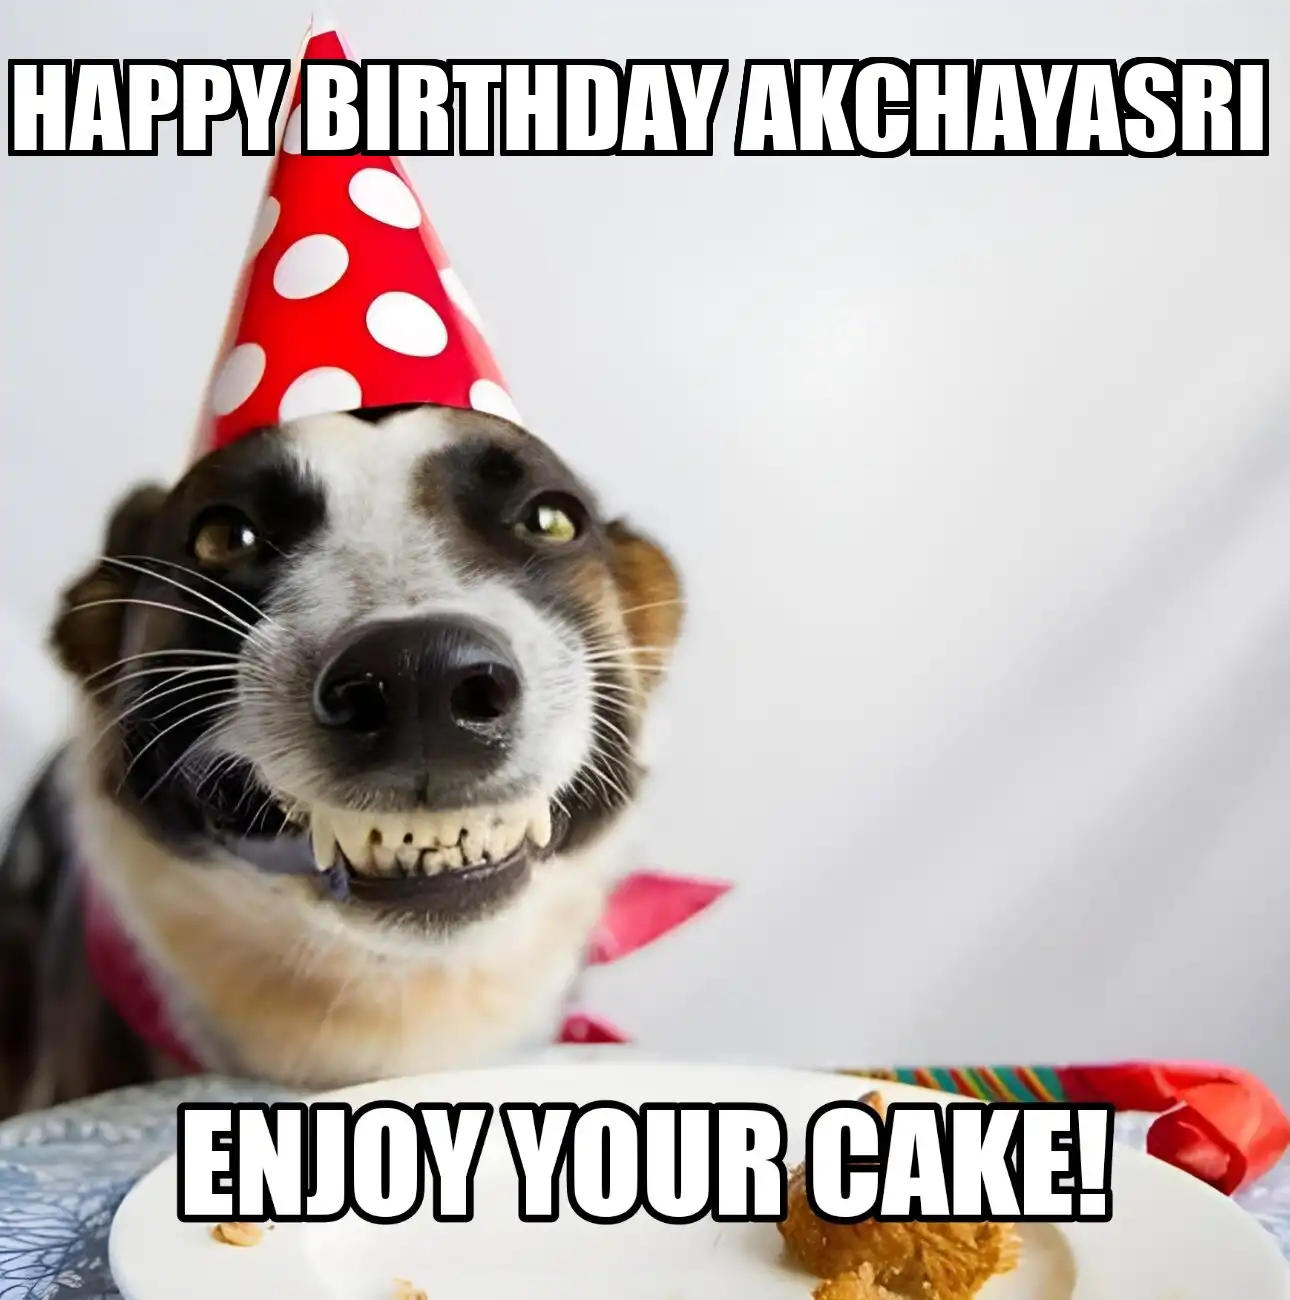 Happy Birthday Akchayasri Enjoy Your Cake Dog Meme